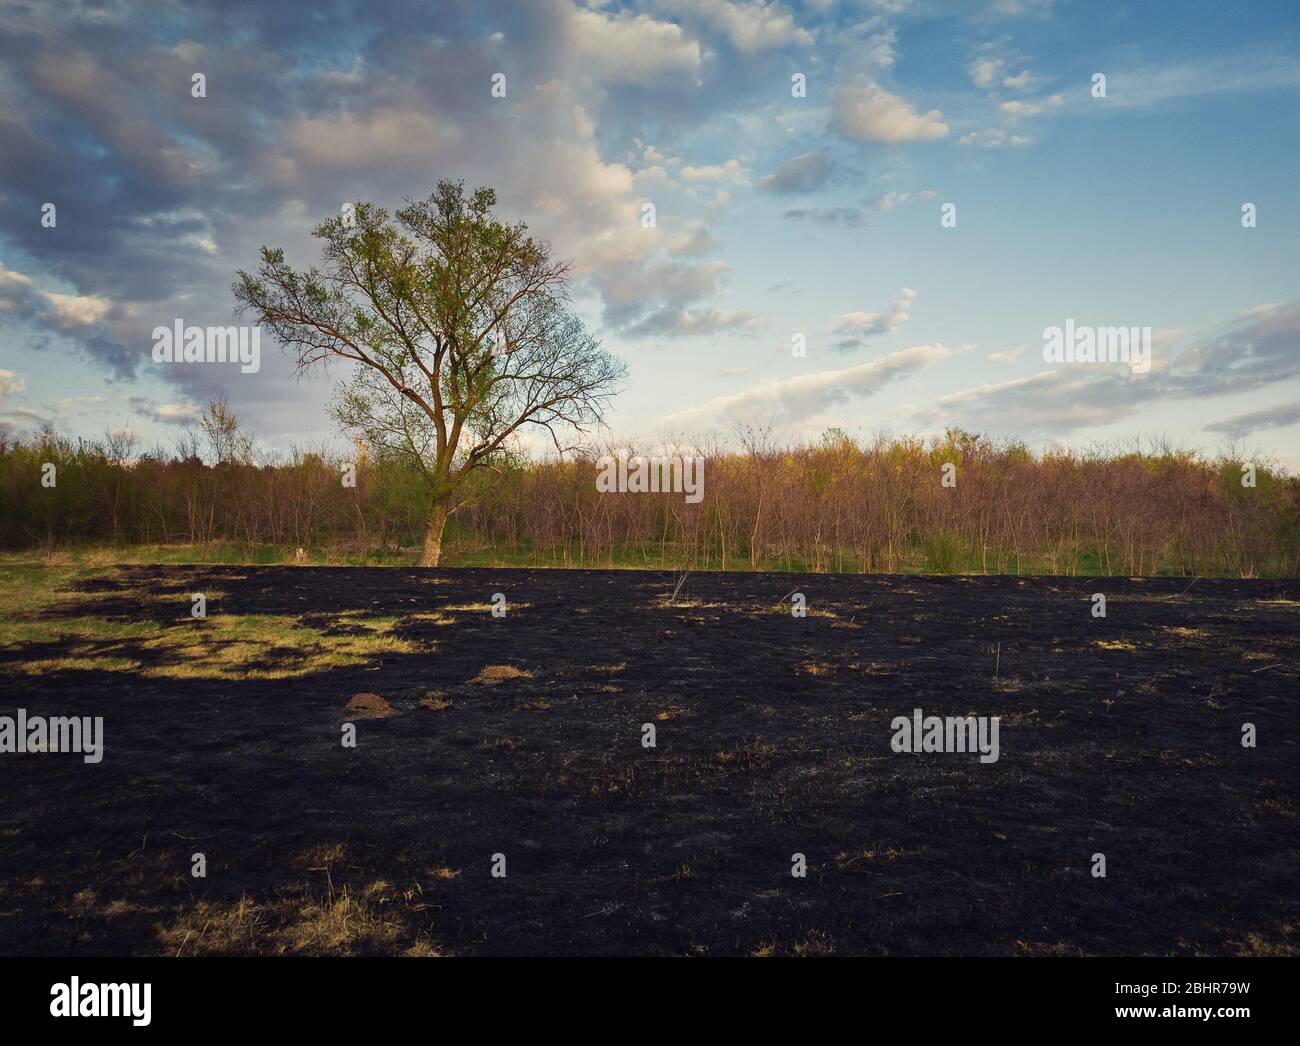 A principios de primavera quemó la vegetación de un prado cerca del bosque. Ceniza oscura en el suelo después de los incendios de hierba. Desastre natural que pone en peligro la flora silvestre y. Foto de stock